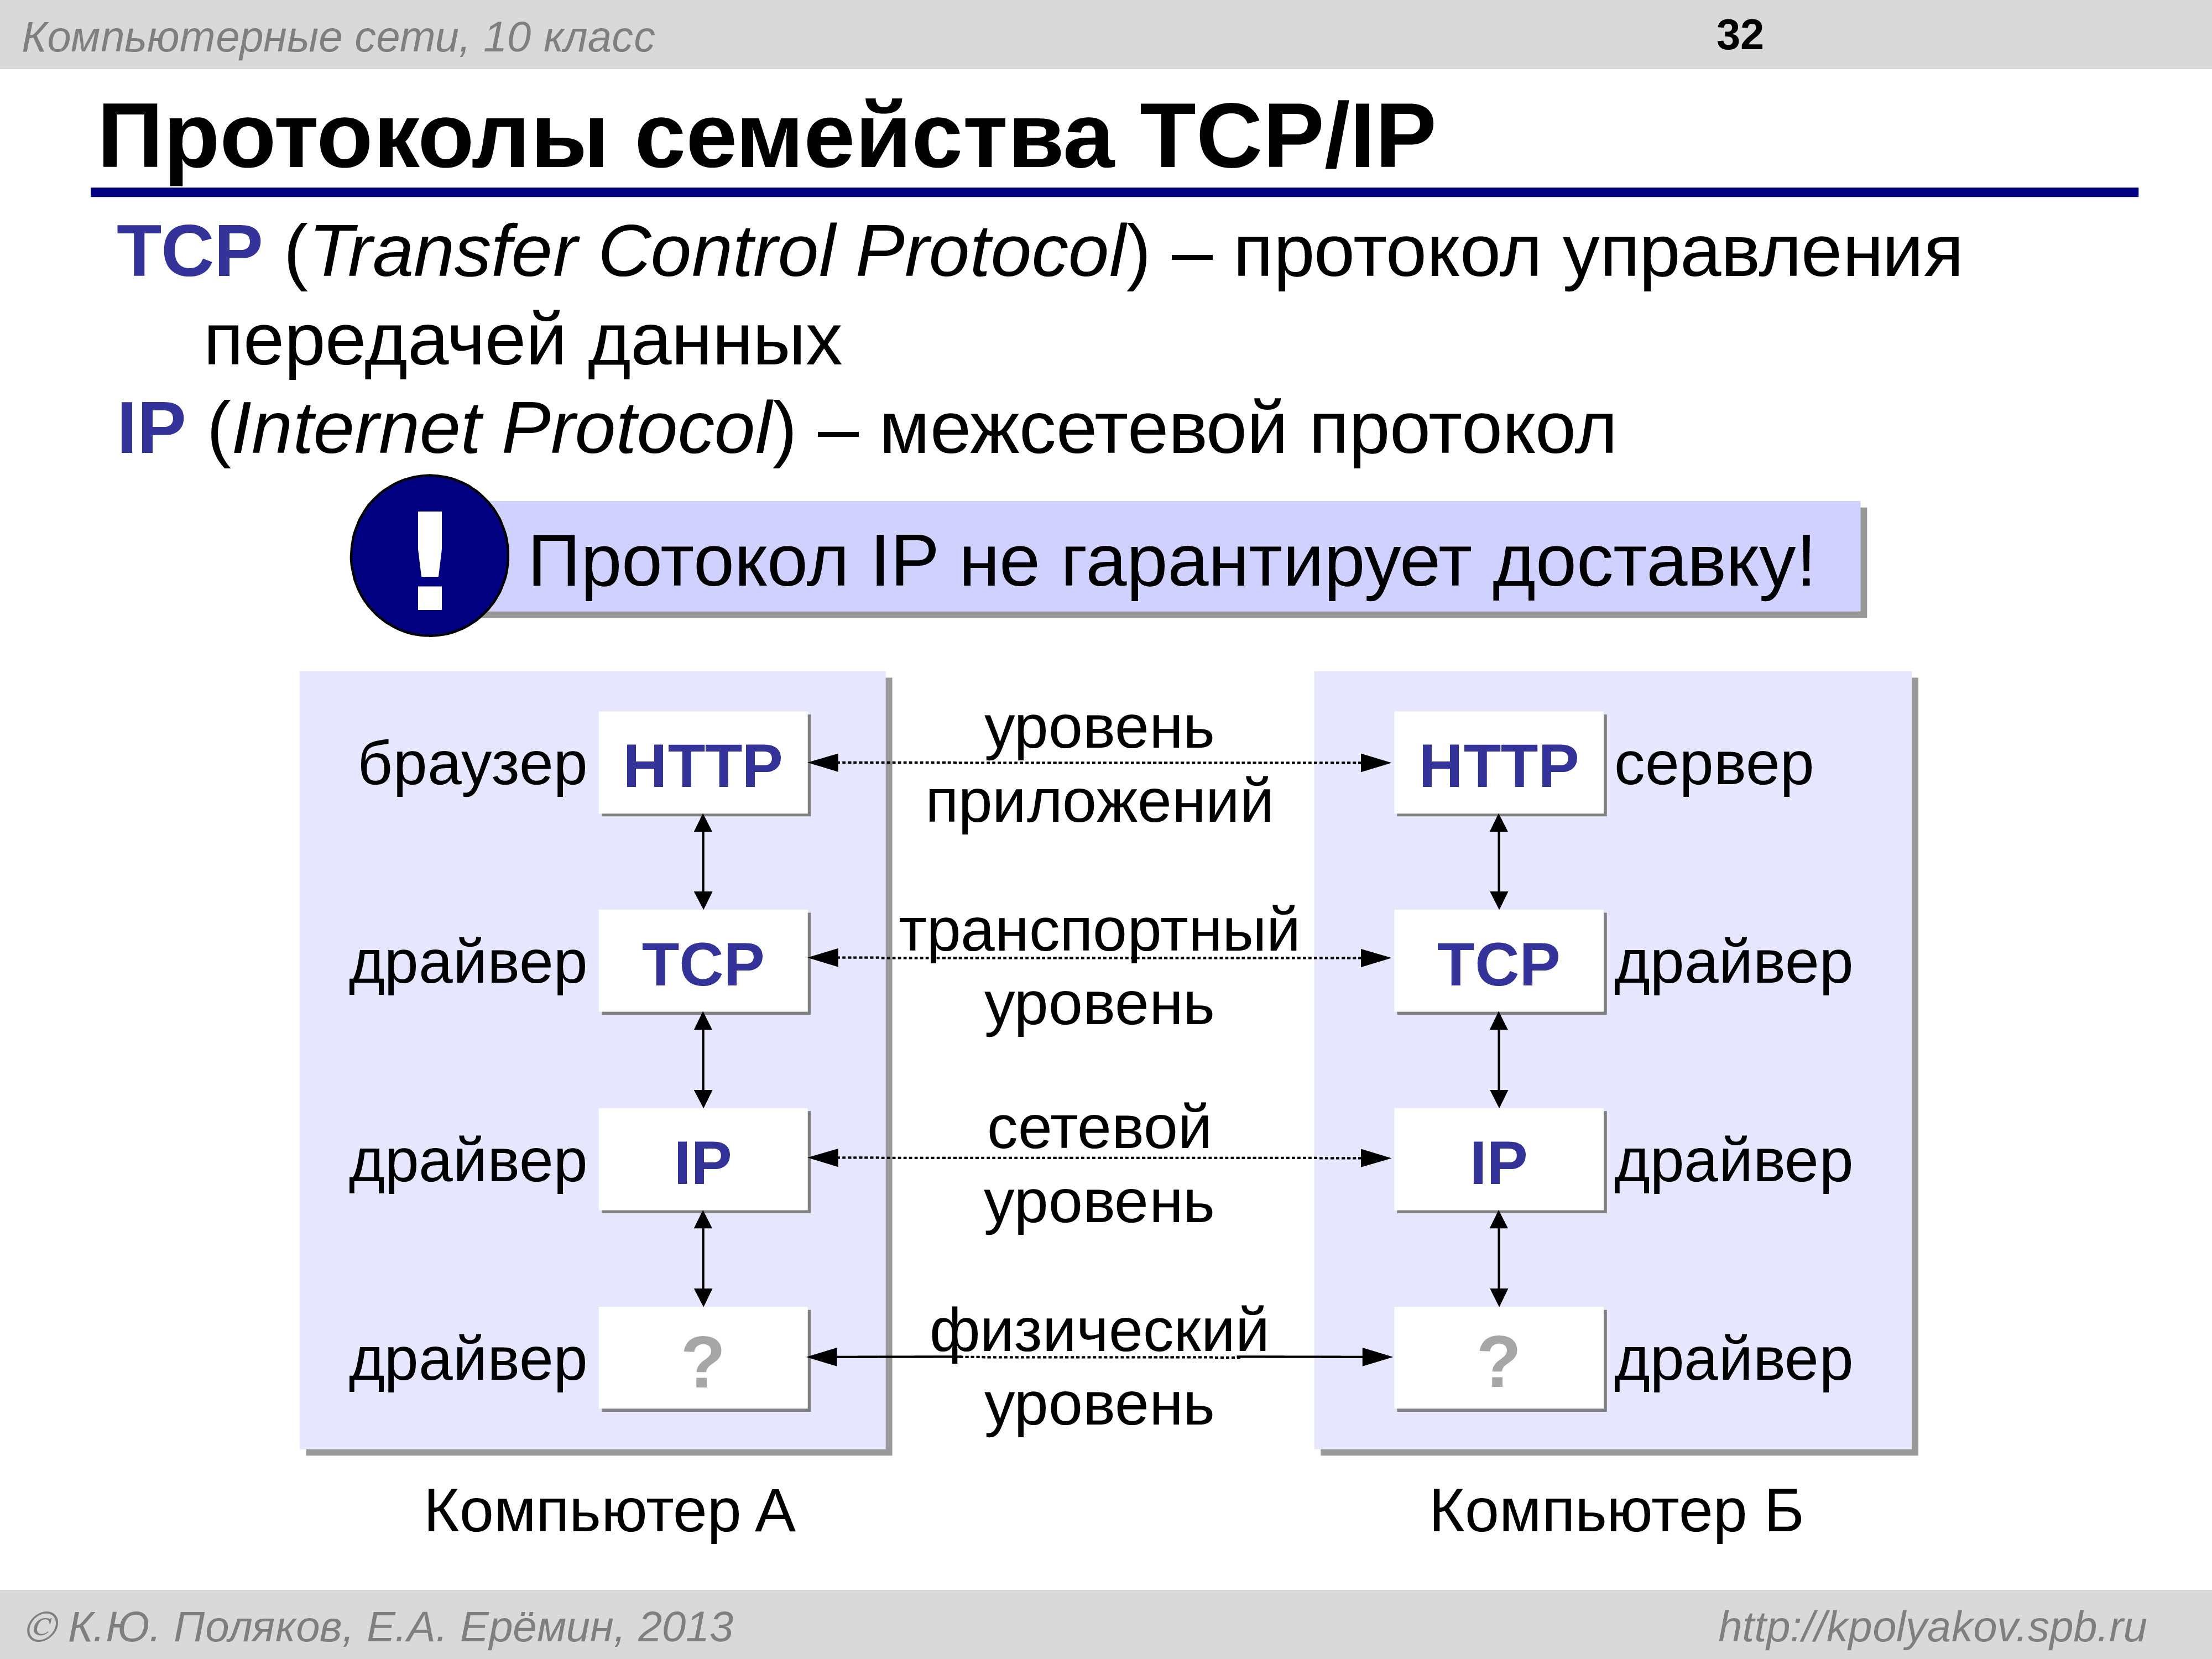 Протокол tcp ip это. Сетевые протоколы ТСР/IP. Протокол TCP/IP. Протокол ТСР/IP передача данных. Семейство сетевых протоколов TCP/IP.